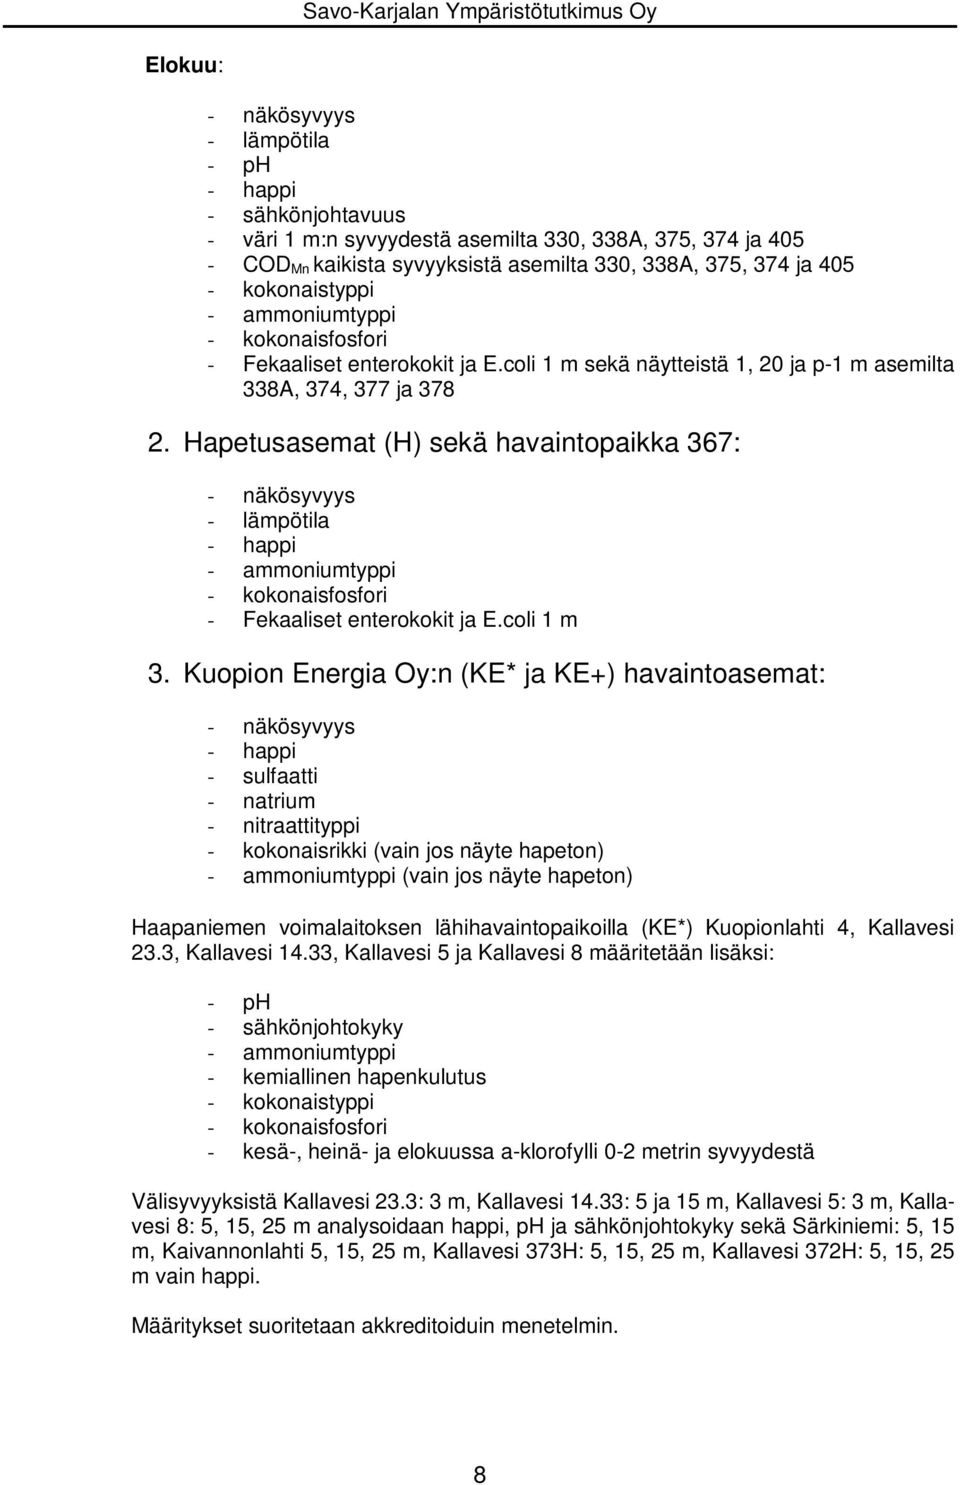 Hapetusasemat (H) sekä havaintopaikka 367: - näkösyvyys - lämpötila - happi - ammoniumtyppi - Fekaaliset enterokokit ja E.coli 1 m 3.